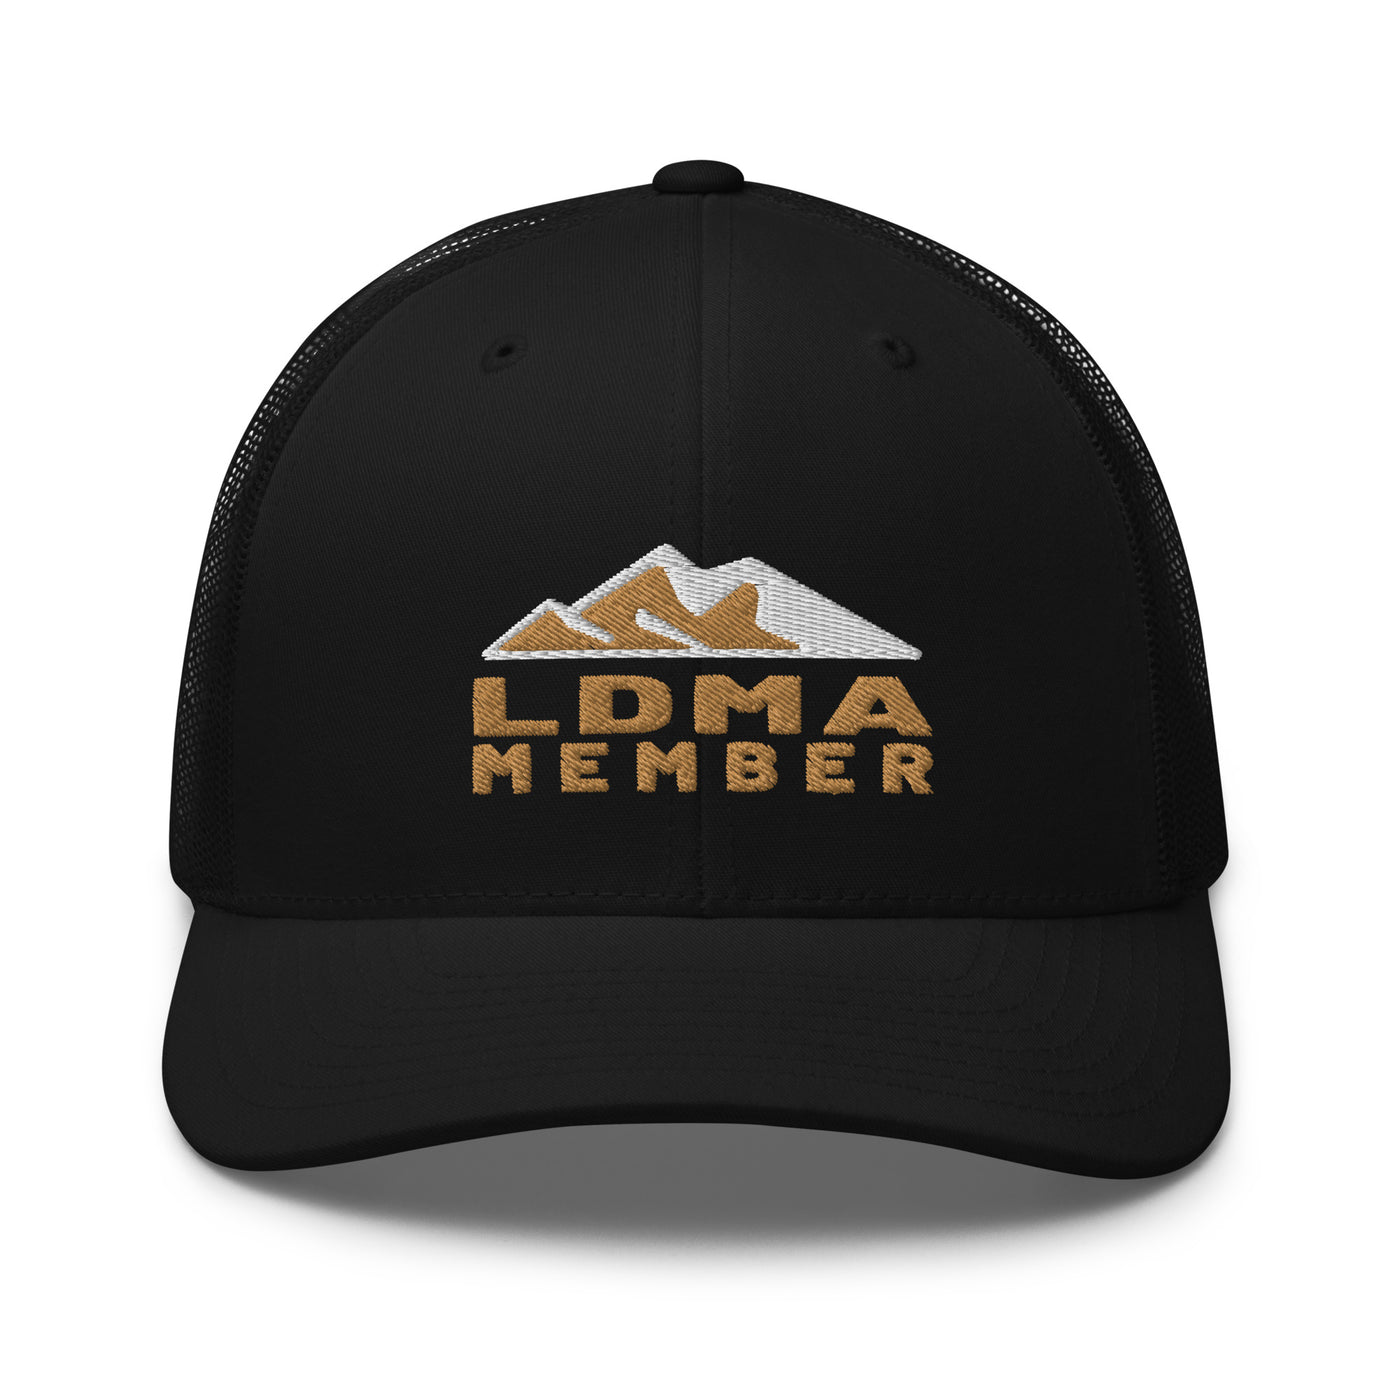 LDMA Member Trucker Cap